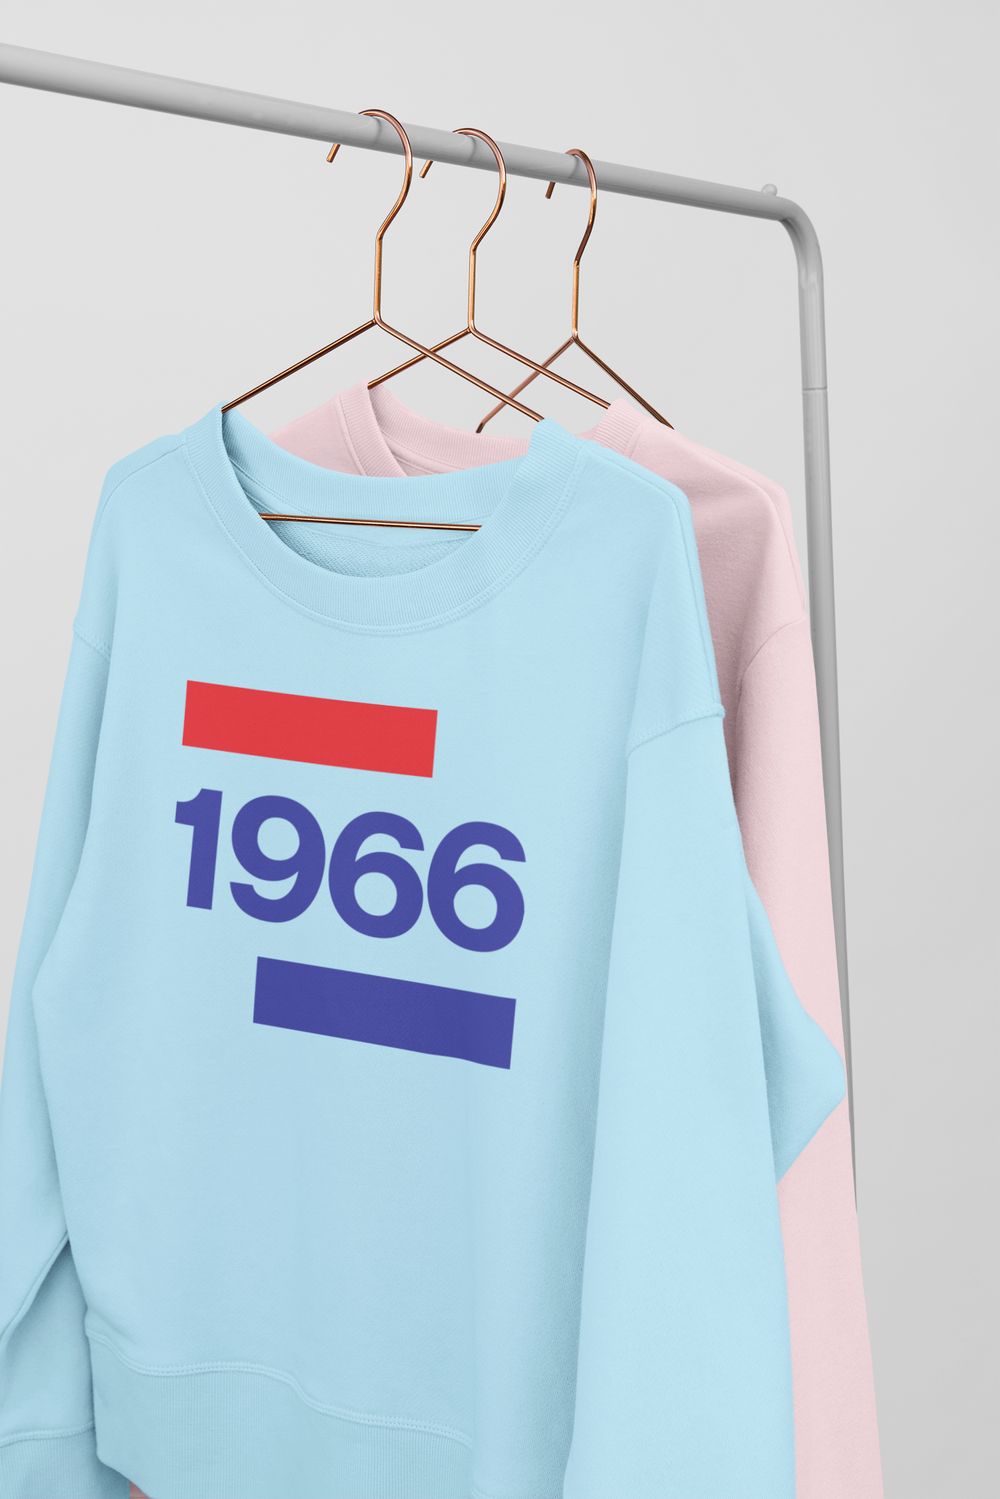 1966 'Going Dutch' UNISEX Sweater - TalkPeng